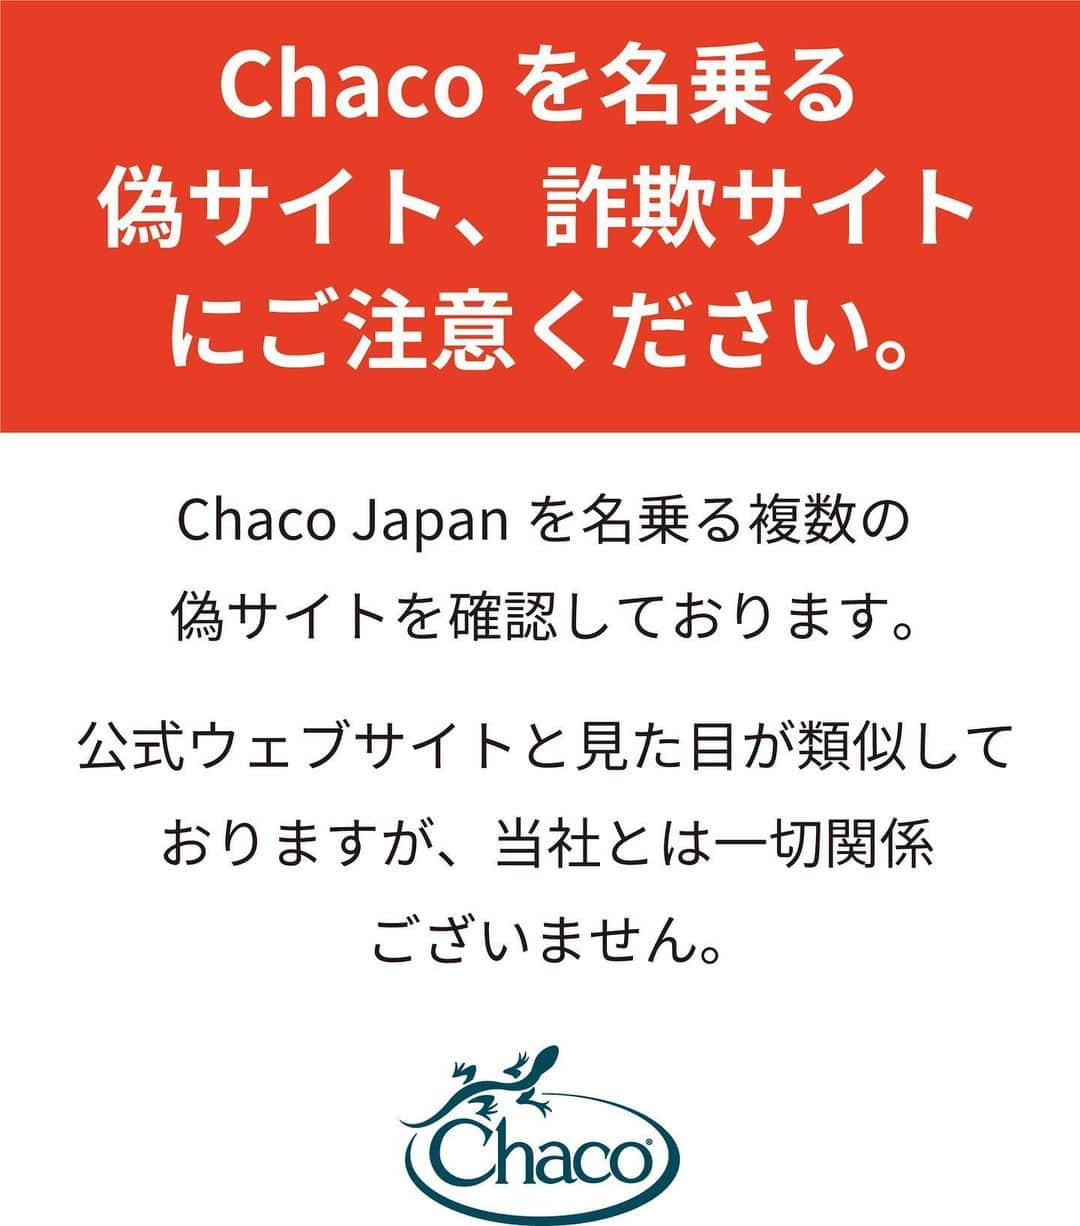 A&F Corporationのインスタグラム：「【注意喚起】悪質な偽サイトにご注意ください！ 弊社は現在、Chaco Japanを名乗る複数の偽サイトが存在することを確認しております。 これらの偽サイトは、公式ウェブサイトと見た目が類似しておりますが、Chaco Japanと当社とは一切関係ございません。  偽サイトでは、注文した商品が届かない等の被害のほか、お客様のクレジットカード情報などの個人情報が不正に取得されるおそれがありますので、お客様におかれましては、くれぐれも悪質な偽サイトをご利用なさらぬよう、十分ご注意ください。 お客様の安全とプライバシーを守るために、以下のポイントにご注意いただきたいと思います。  ① 公式ウェブサイトのご確認：当社の公式ウェブサイトは「https://www.chacos.jp/」です。 このウェブサイト以外にChacoに関する当社の公式ウェブサイトはございません。偽サイトは、公式ウェブサイトと類似しておりますが、一部の文字やレイアウト等、形式が異なります。 ② 連絡先情報のご照会： 当社の公式ウェブサイトで提供しております。偽サイト連絡先情報は偽物である可能性があります。 詐欺であることが疑わしい場合には、当社HP内「お問合せフォーム」へご連絡ください。 ③ フィッシング詐欺にご注意： 偽サイトでは、フィッシング詐欺の手法を使用して個人情報を詐取することがあります。絶対に個人情報を提供しないようご注意ください。被害に遭われた場合は最寄り警察署の相談窓口または消費生活センターなどへご相談されることを推奨します。 警視庁： https://www.npa.go.jp/bureau/cyber/countermeasures/phishing.html 消費者庁： https://www.caa.go.jp/policies/policy/consumer_policy/caution/internet/trouble/internet.html  偽サイトの特徴は、以下のとおりです。 ①　正規販売価格より低価格で商品を販売している。 ②　ほとんどの製品が割引されている。 ③　カートに入れる前に個人情報の新規登録が必要。 なお、偽サイトでのトラブルに関しまして当社は一切の責任を負いかねます。お客様におかれまして、十分にご注意くださいますようお願い申し上げます。  2023年5 月 株式会社エイアンドエフ」